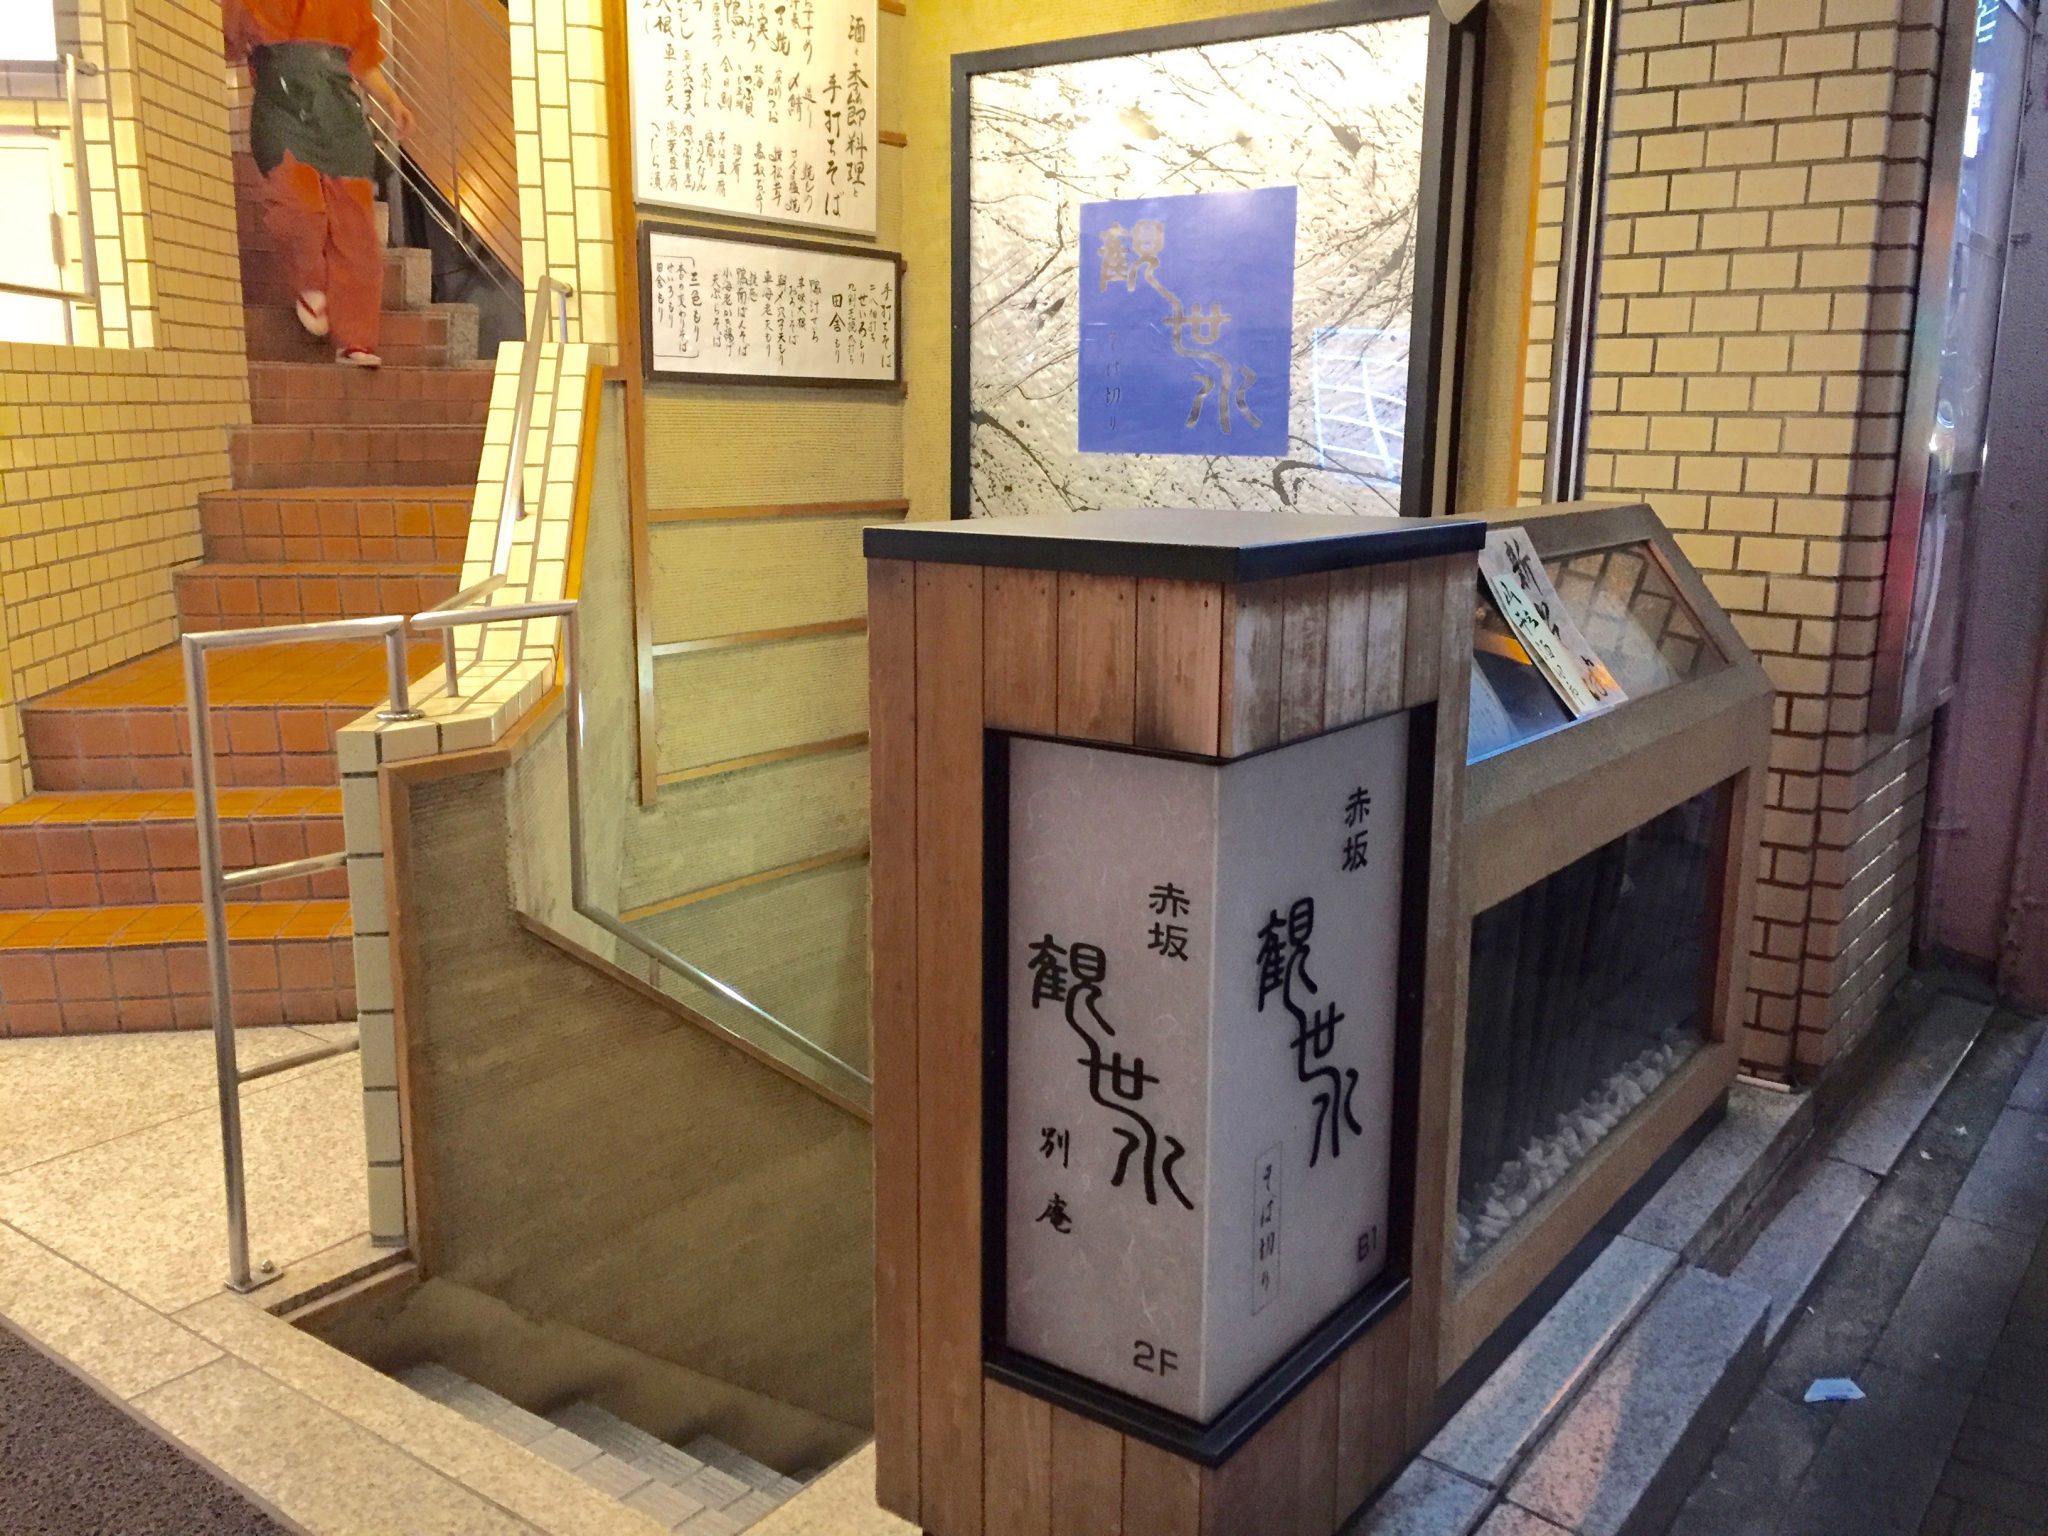 赤坂 そば 観世水ː３種のそばをはじめ、豊富な料理と日本酒を楽しめる蕎麦居酒屋